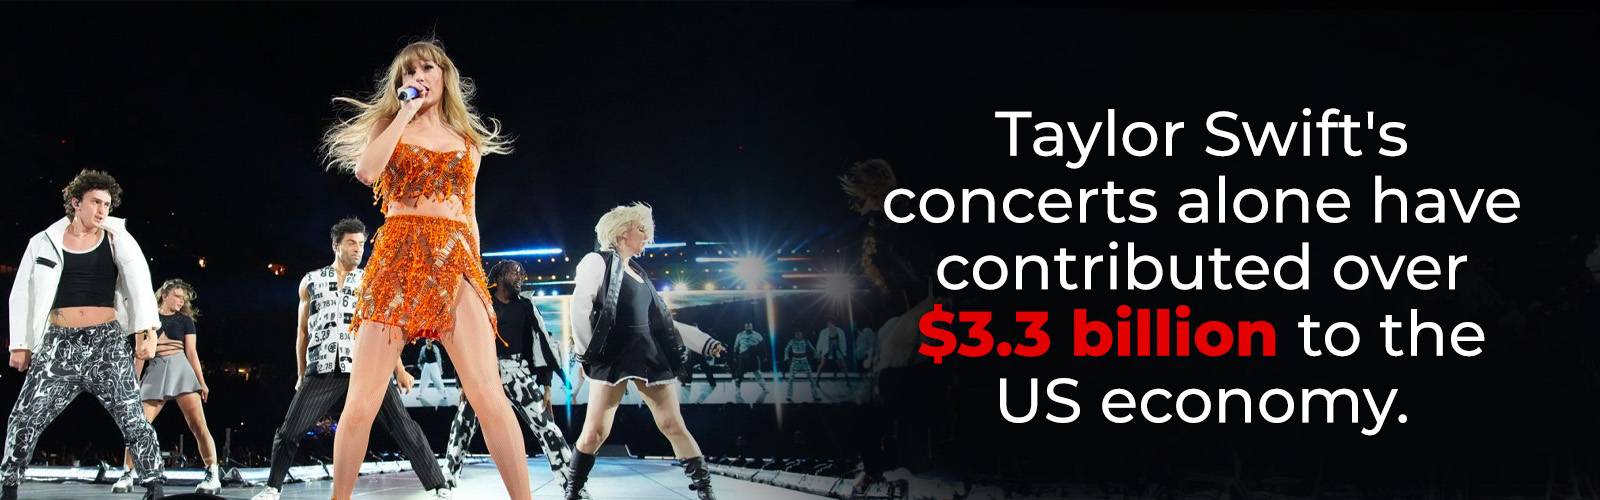 Taylor Swifts konserter bidrar till den amerikanska ekonomin